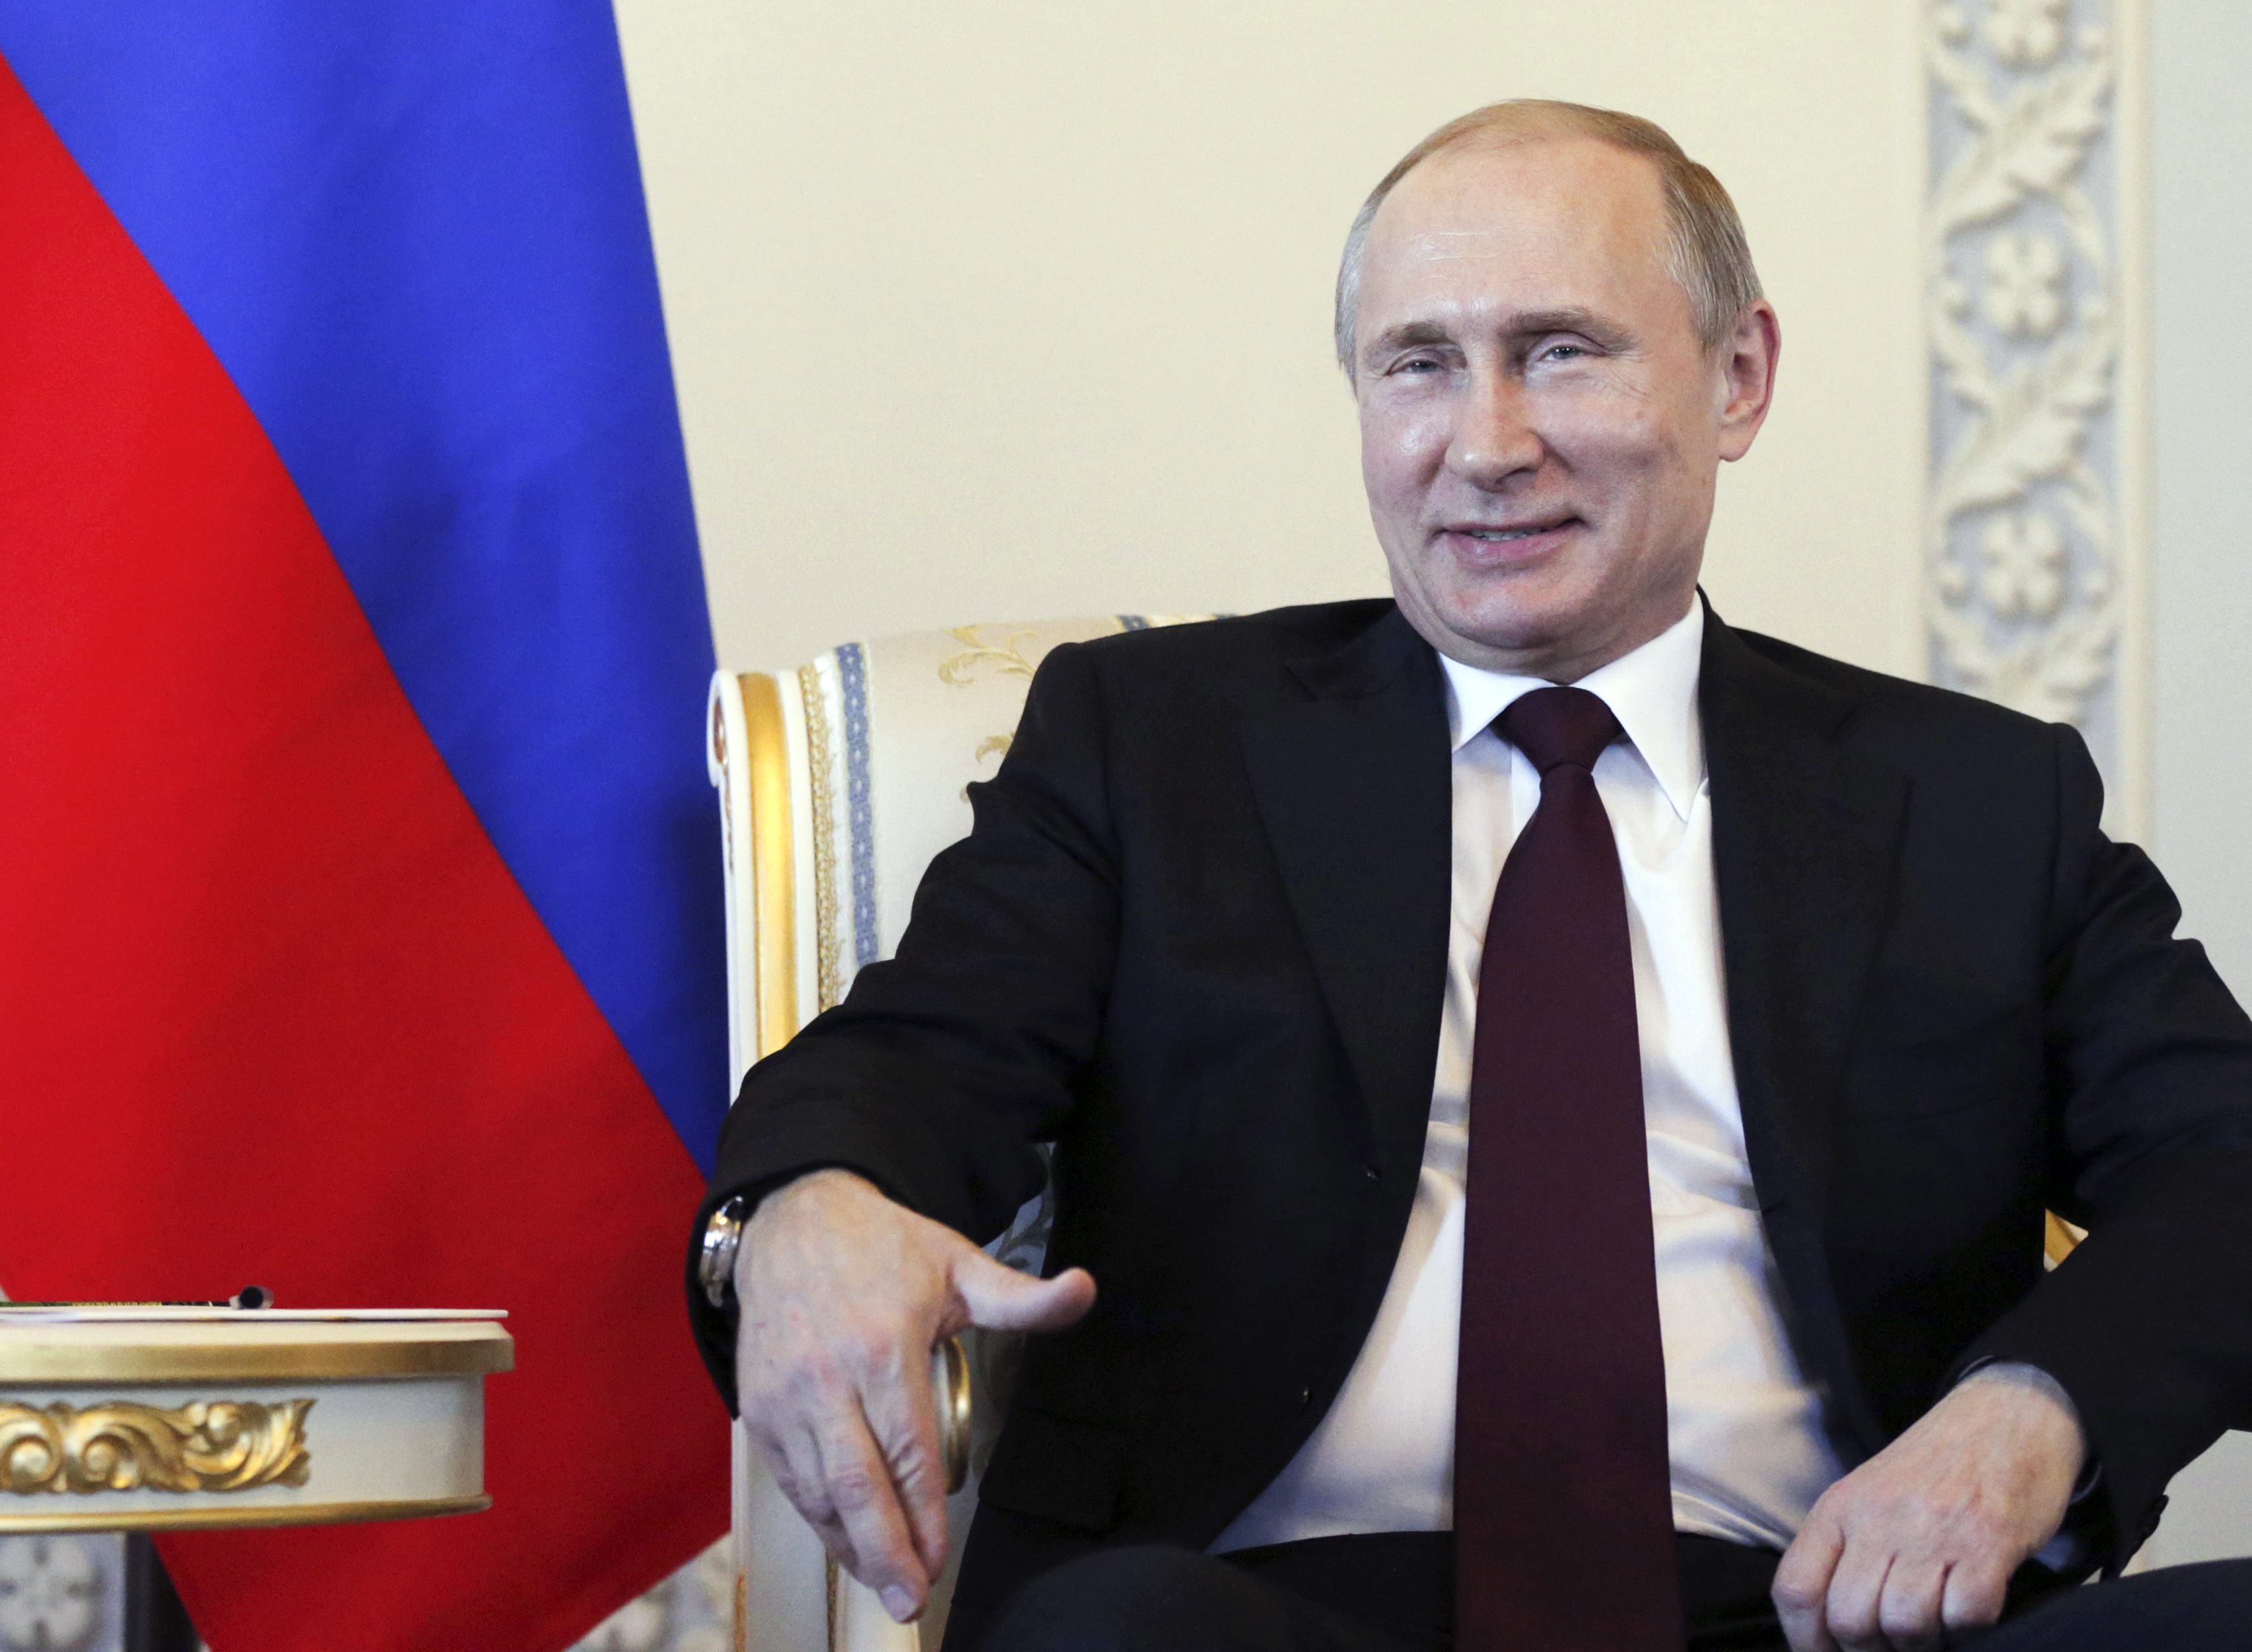 Putin reaparece en público y rechaza rumores sobre su inusual ausencia